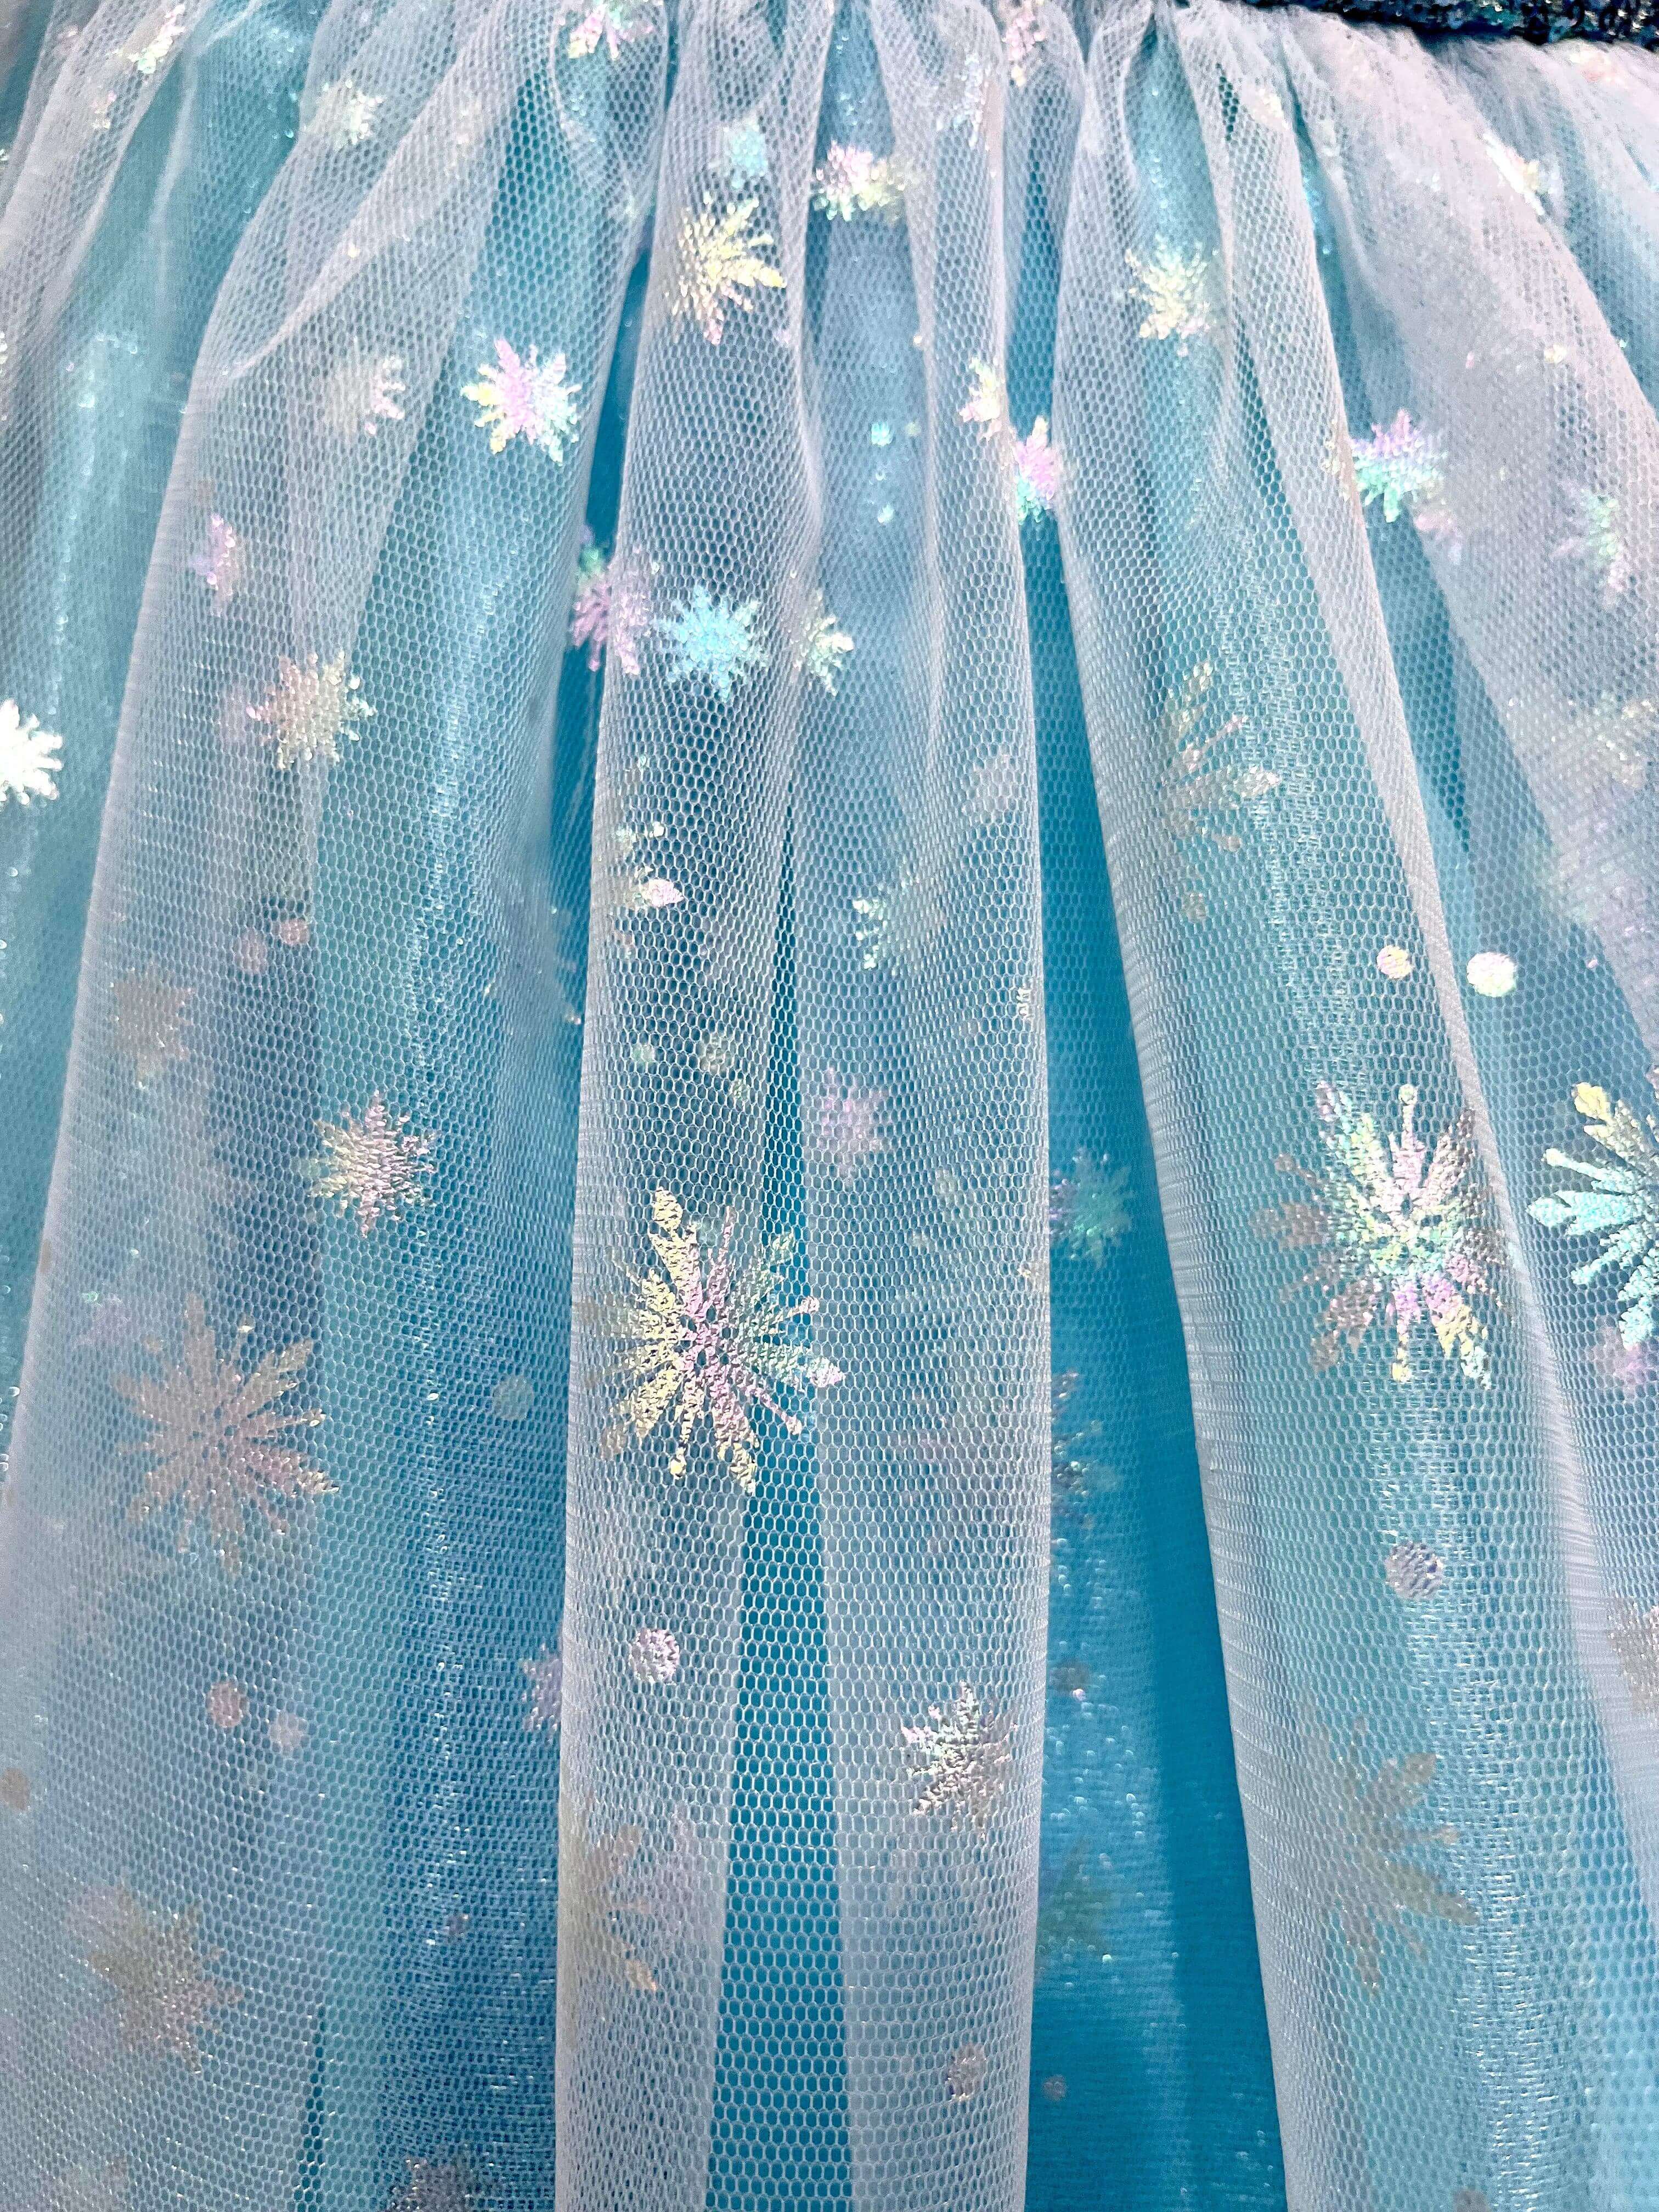 Princess Elsa Frozen Custom Fitted Made Dress Costume by FluidYard, $79.99  | Frozen dress, Frozen costume, Dress